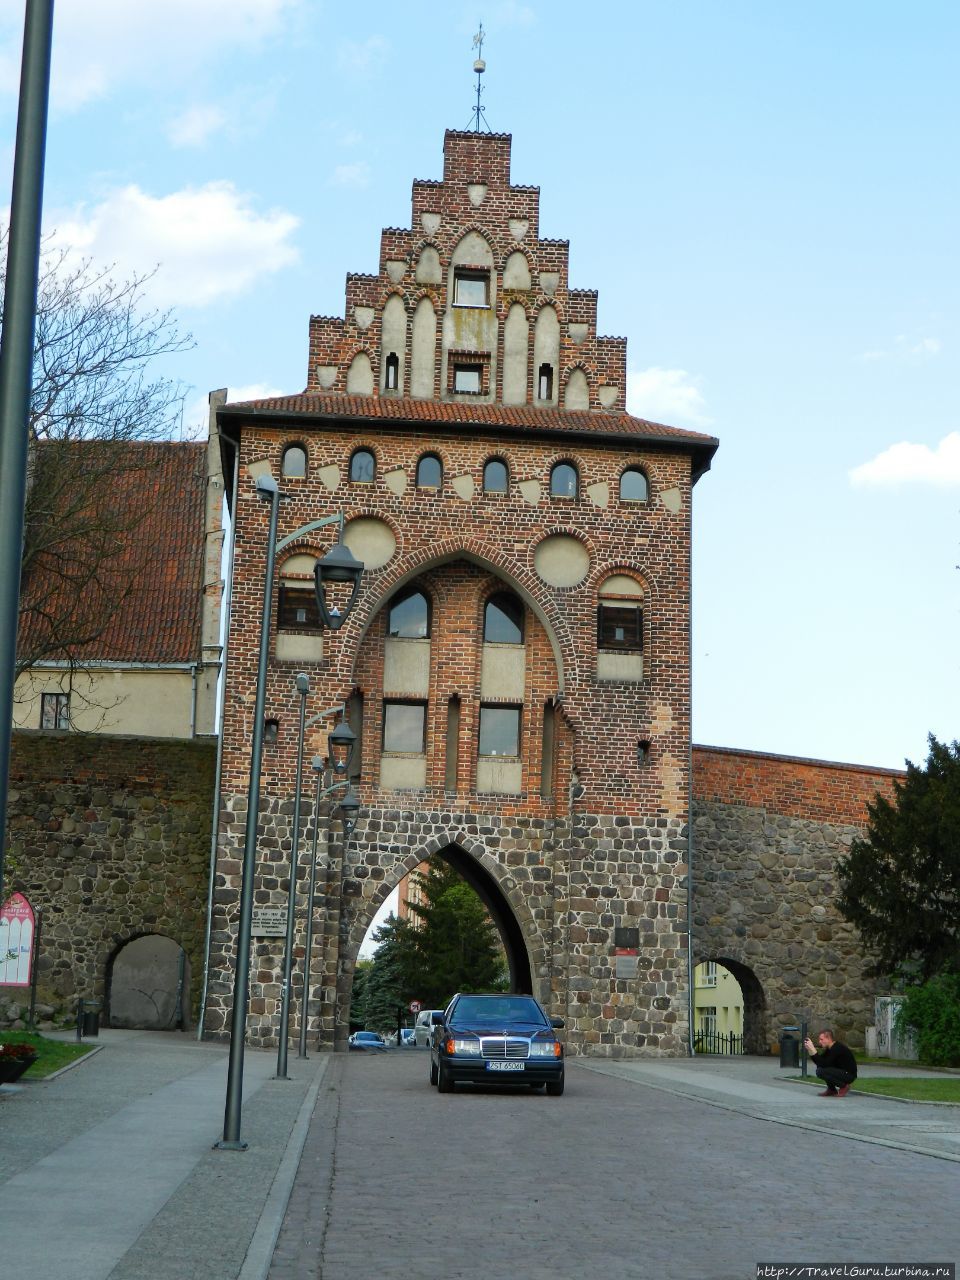 Пыжицкие ворота. Вид снаружи крепостных стен Старгард-Щециньски, Польша